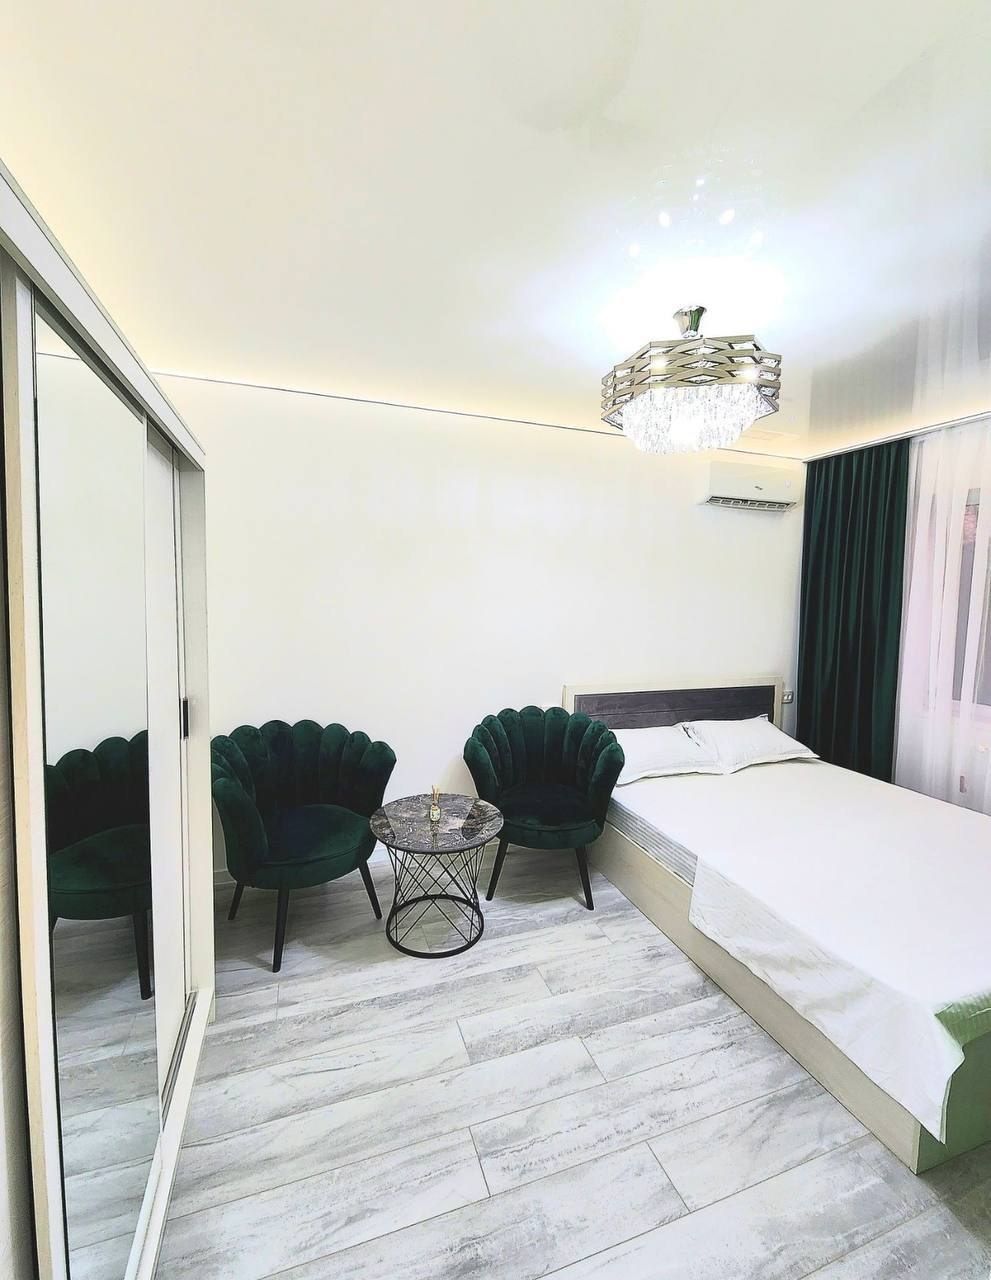 Продаётся 1-комнатная квартира возле МВД Корзинки с новым ремонтом